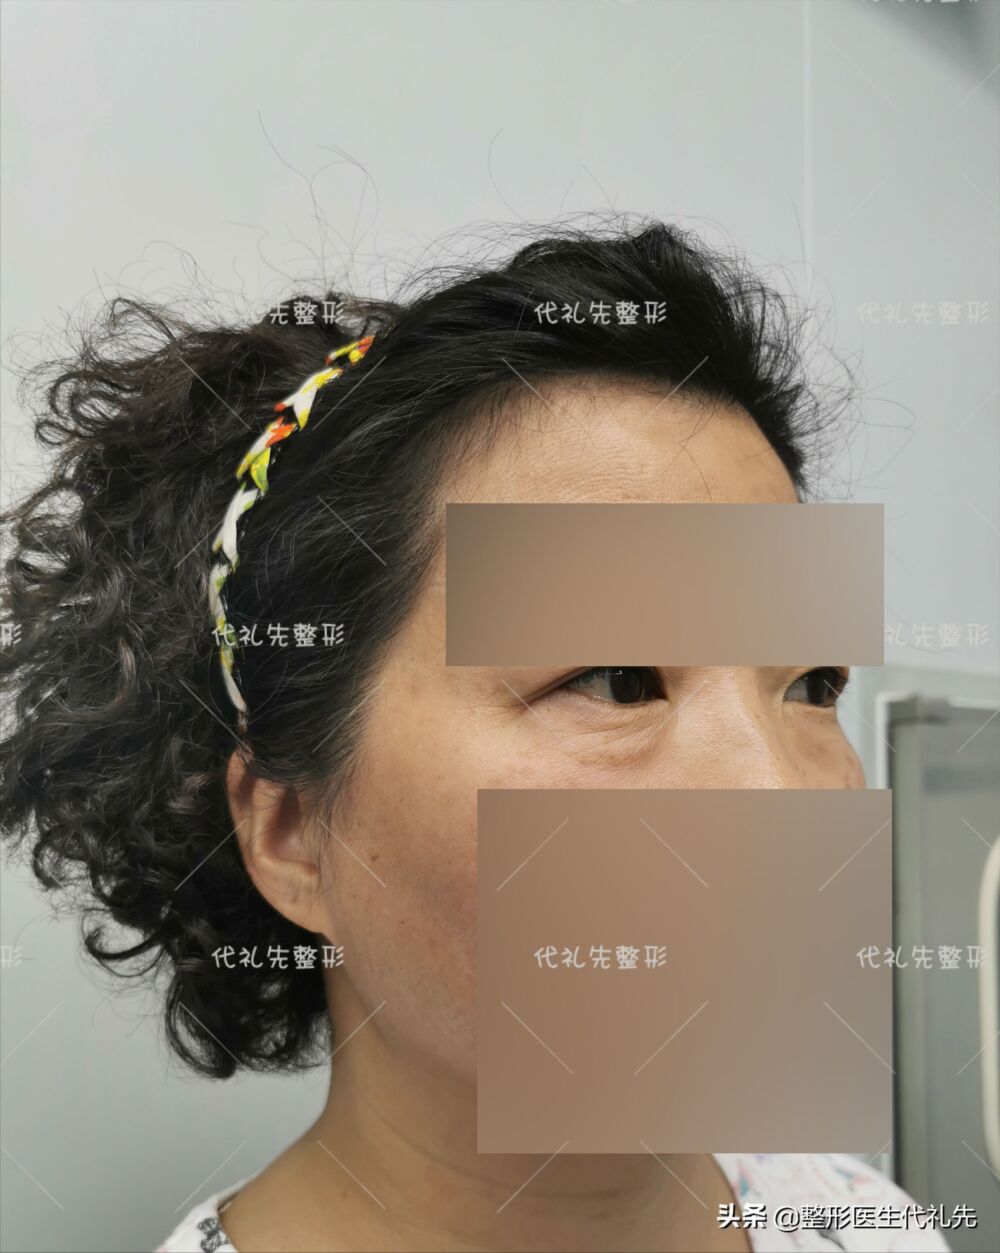 说说我在北京做“外切去眼袋手术”的亲身经历和术后的感受